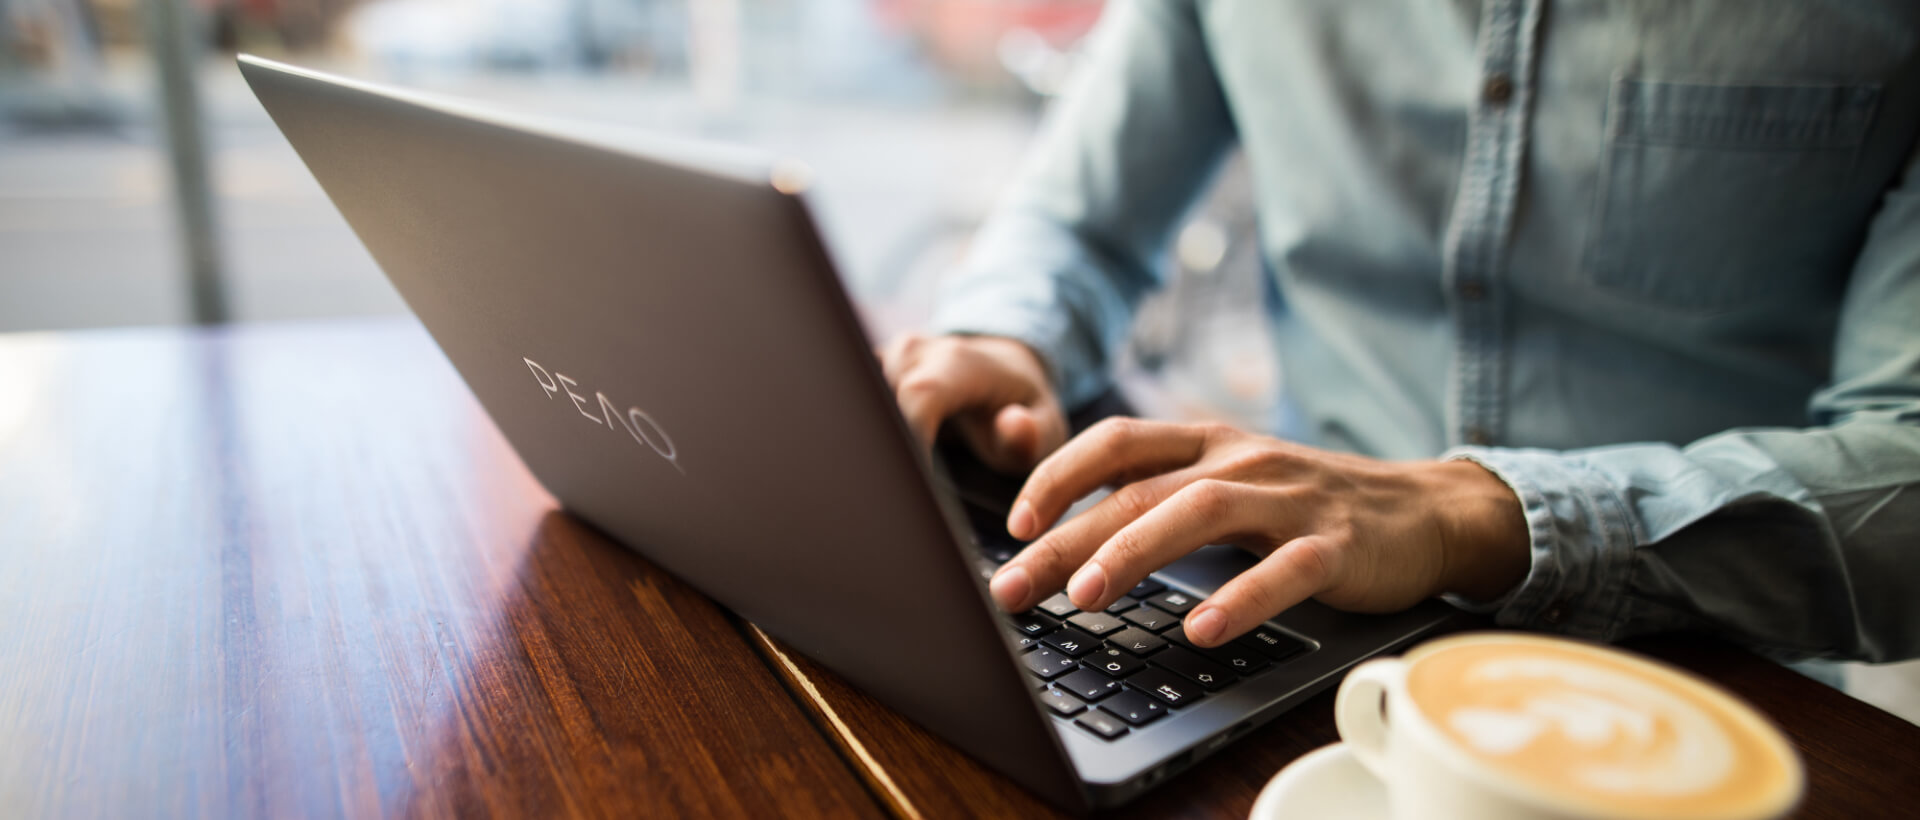 Un jeune homme tape quelque chose sur un ordinateur portable de PEAQ, tasse de café à côté, assis dans un café, gros plan, panorama